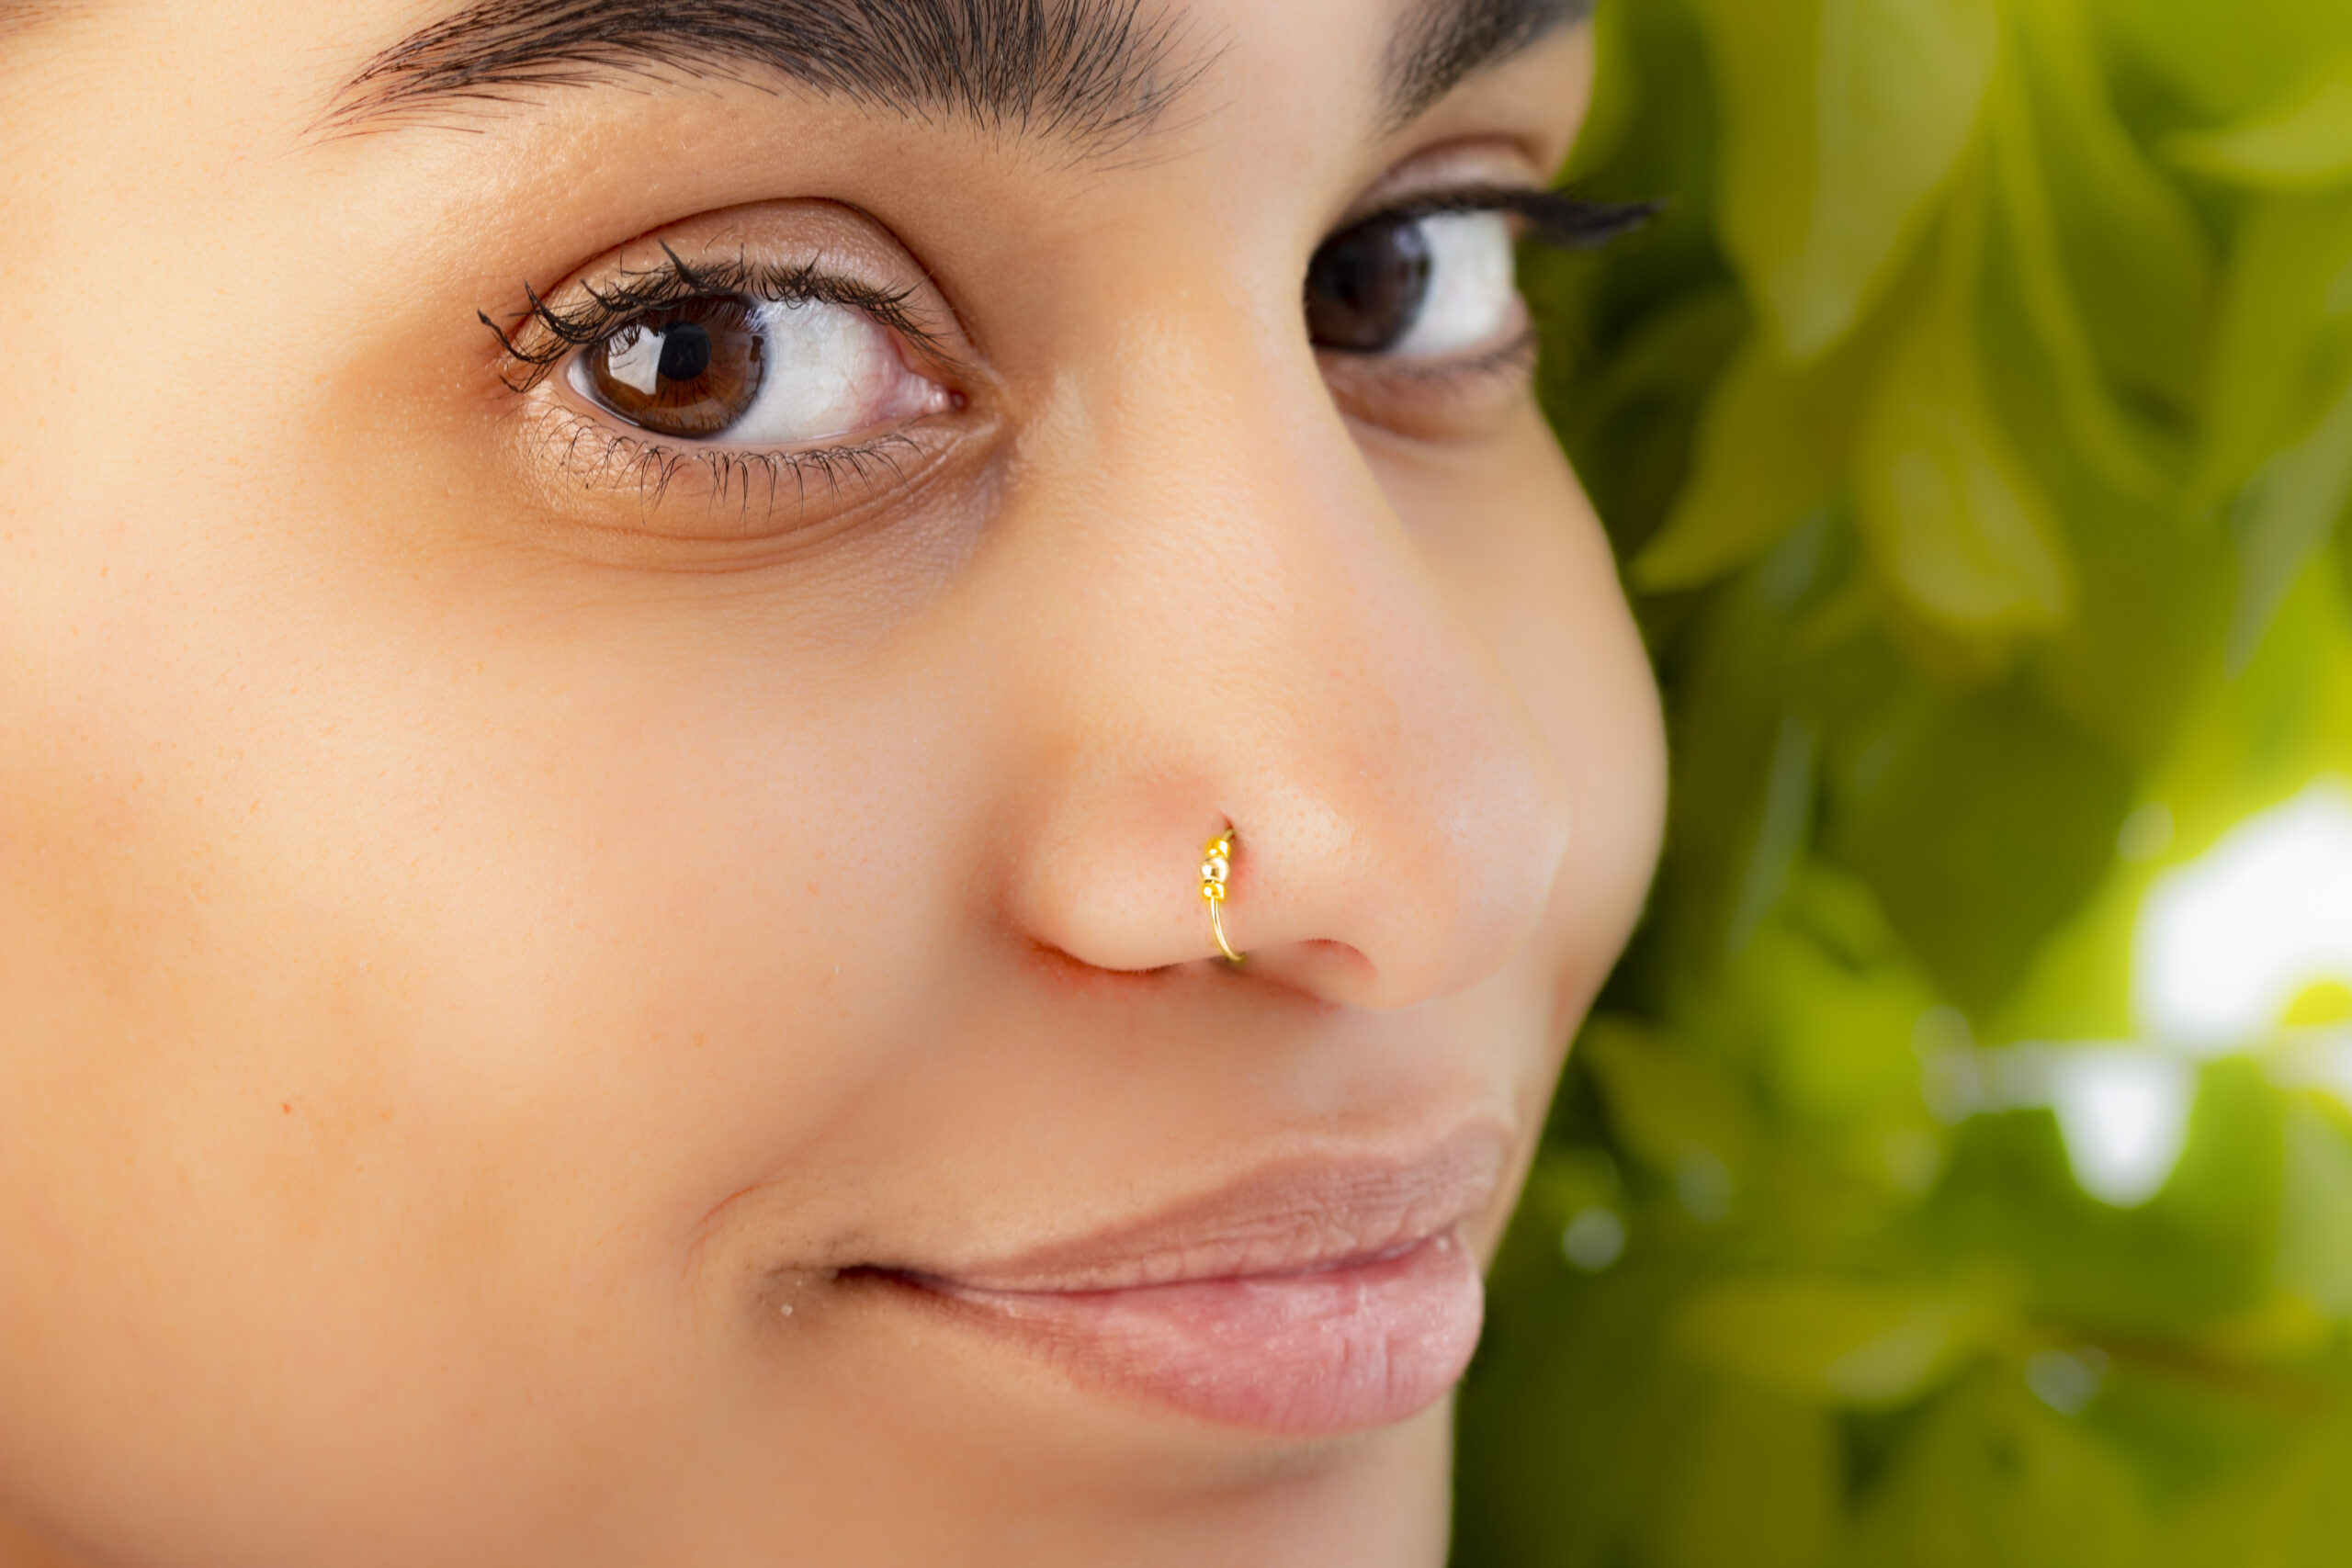 Beaded Gold Fake Nose Piercing Ring 24G - Jolliz